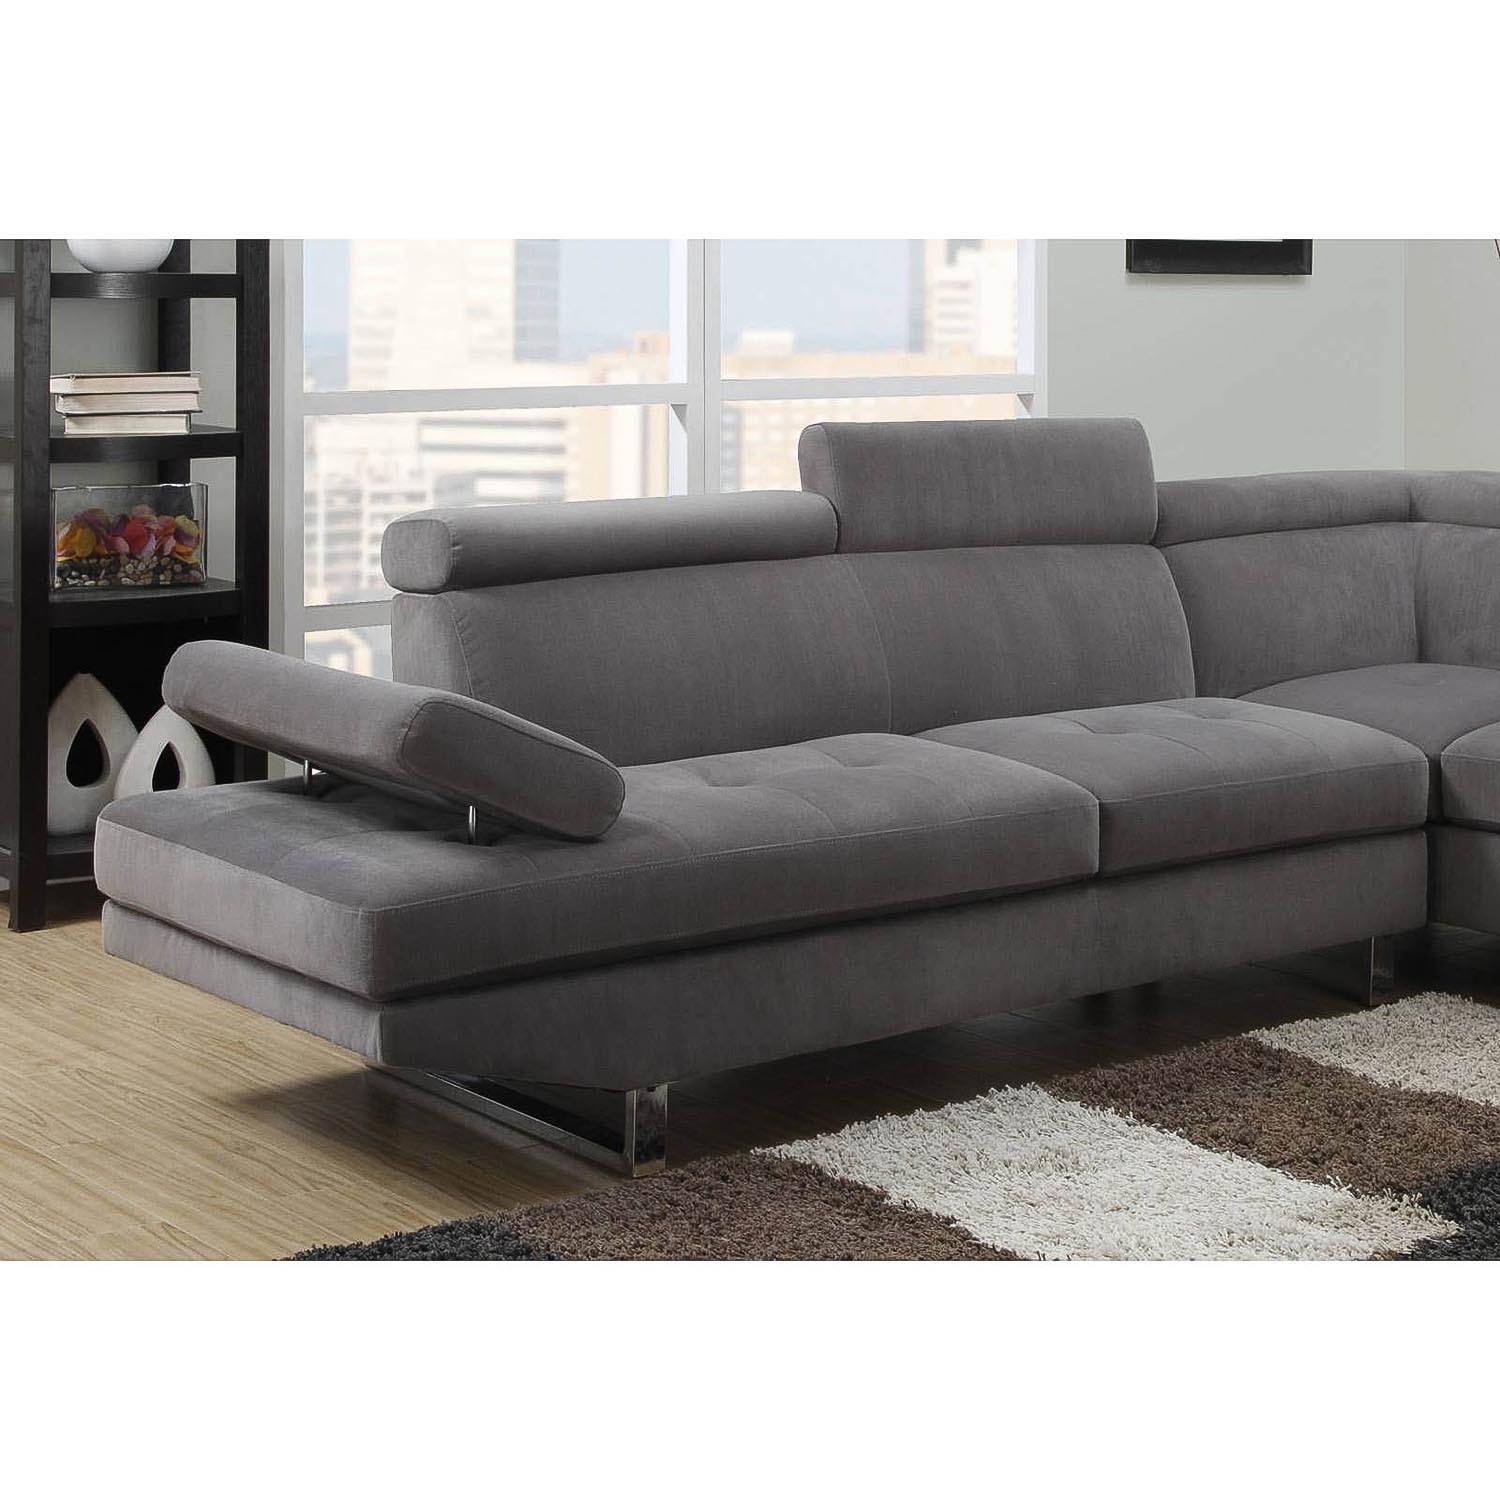 Canapé d'angle droit design en tissu gris avec têtières ajustables